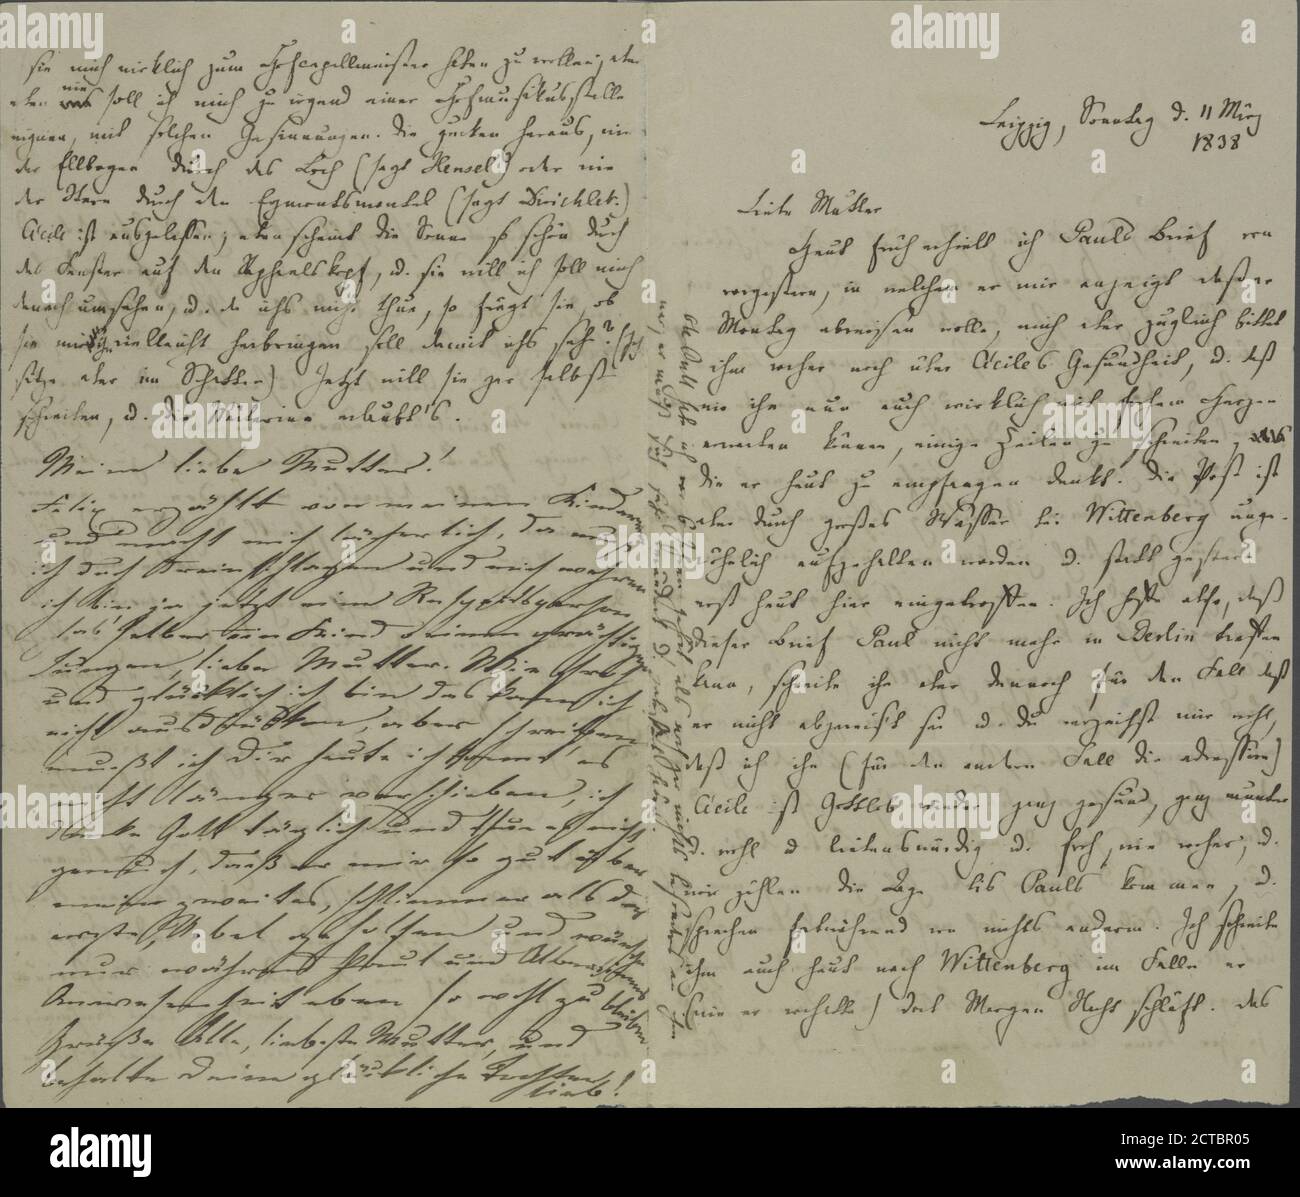 MB an Lea, 11. März 1838., text, Correspondence, 1838, Mendelssohn-Bartholdy, Felix, 1809-1847 Stock Photo